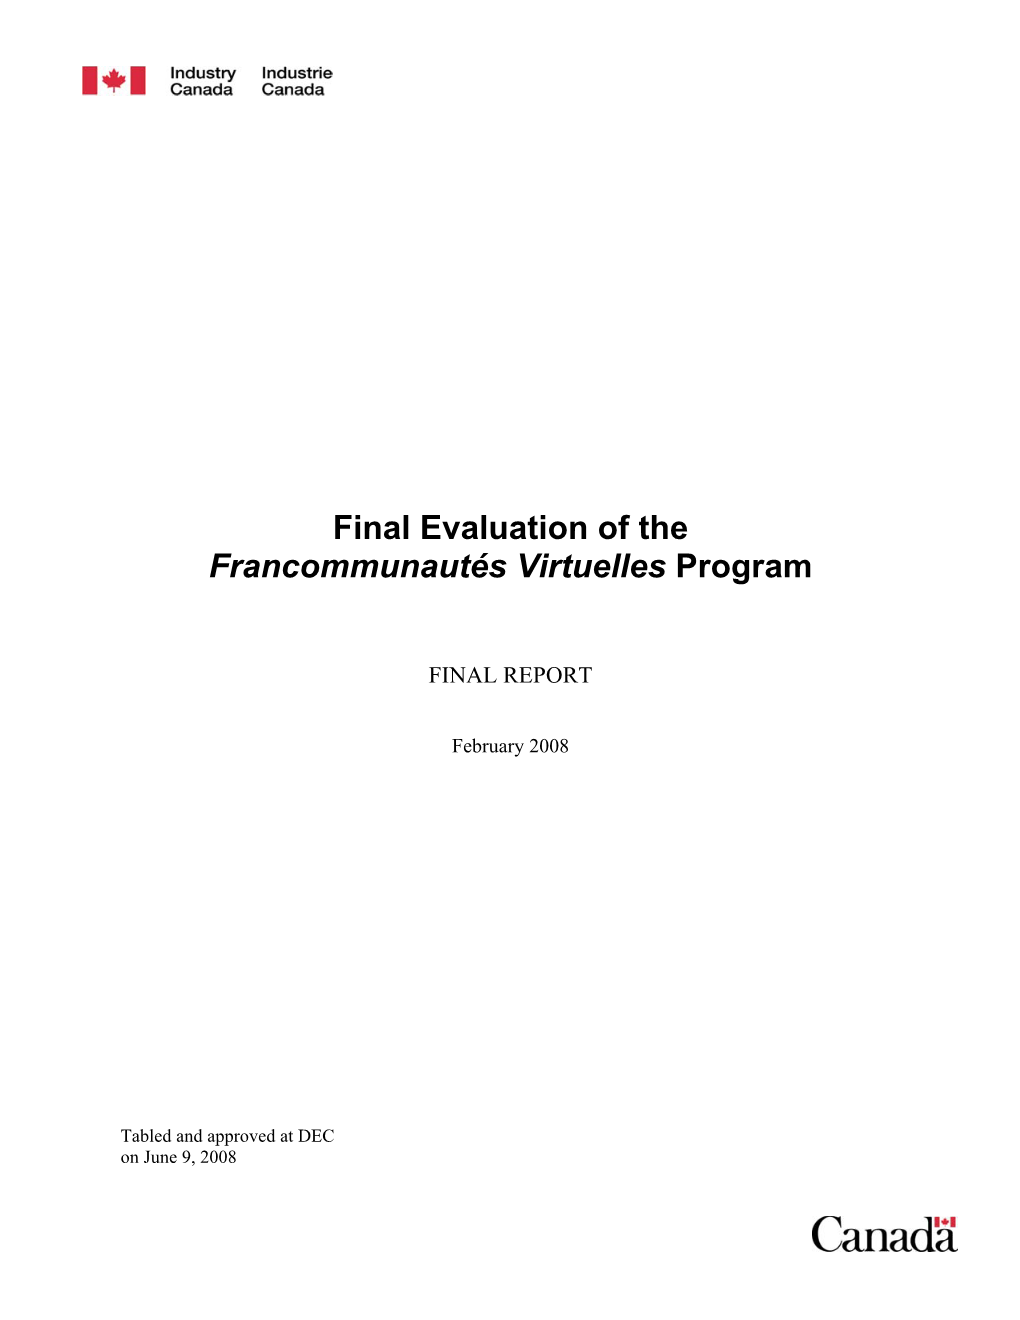 Final Evaluation of the Francommunautés Virtuelles Program